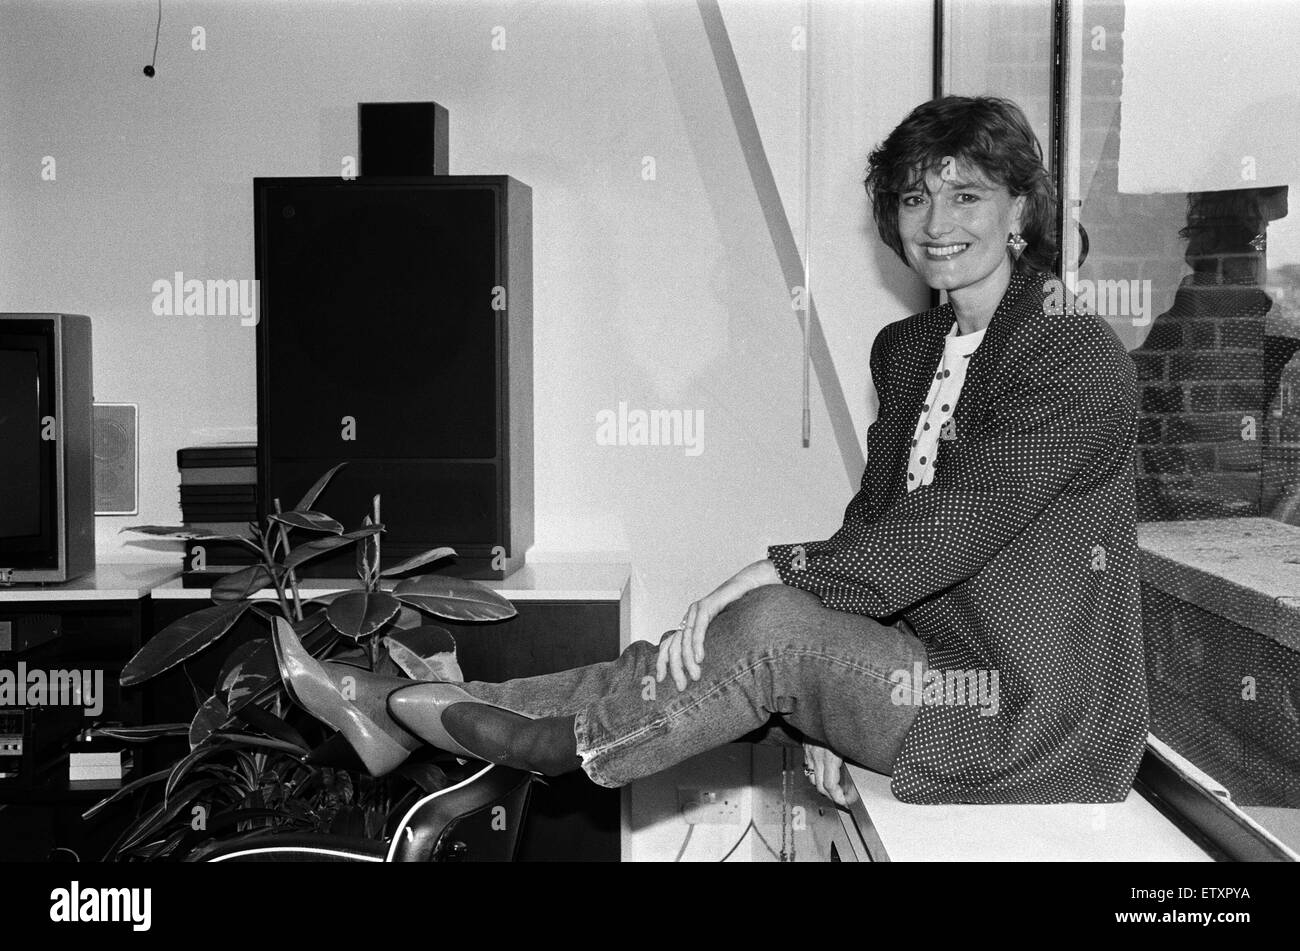 Singer Linda Thompson, qui vient de sortir un nouvel album solo après sa séparation de mari Richard. 6e juin 1985. Banque D'Images